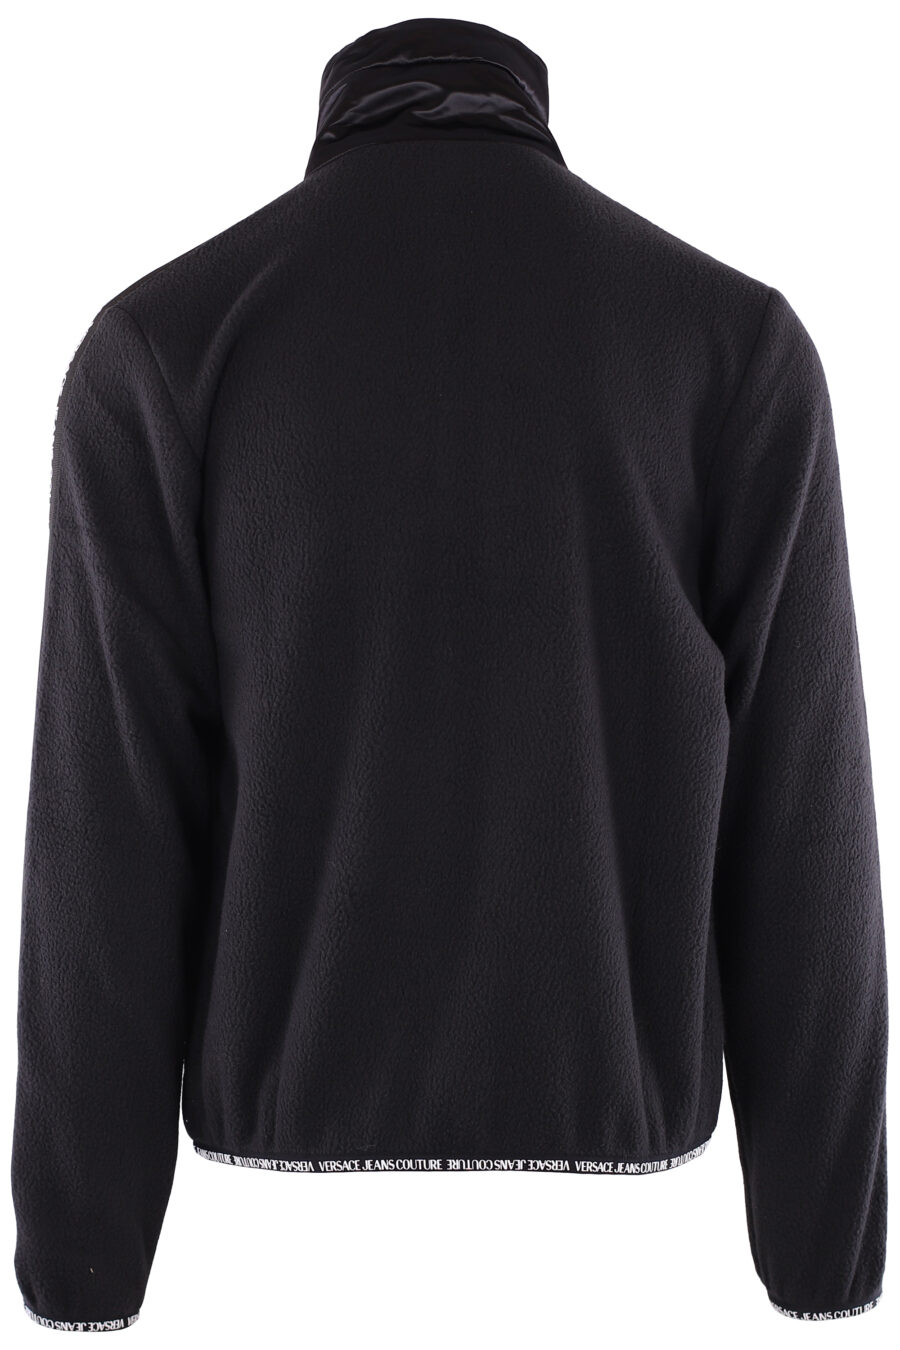 Sweat-shirt noir en polaire avec logo en ruban sur les manches - IMG 6373